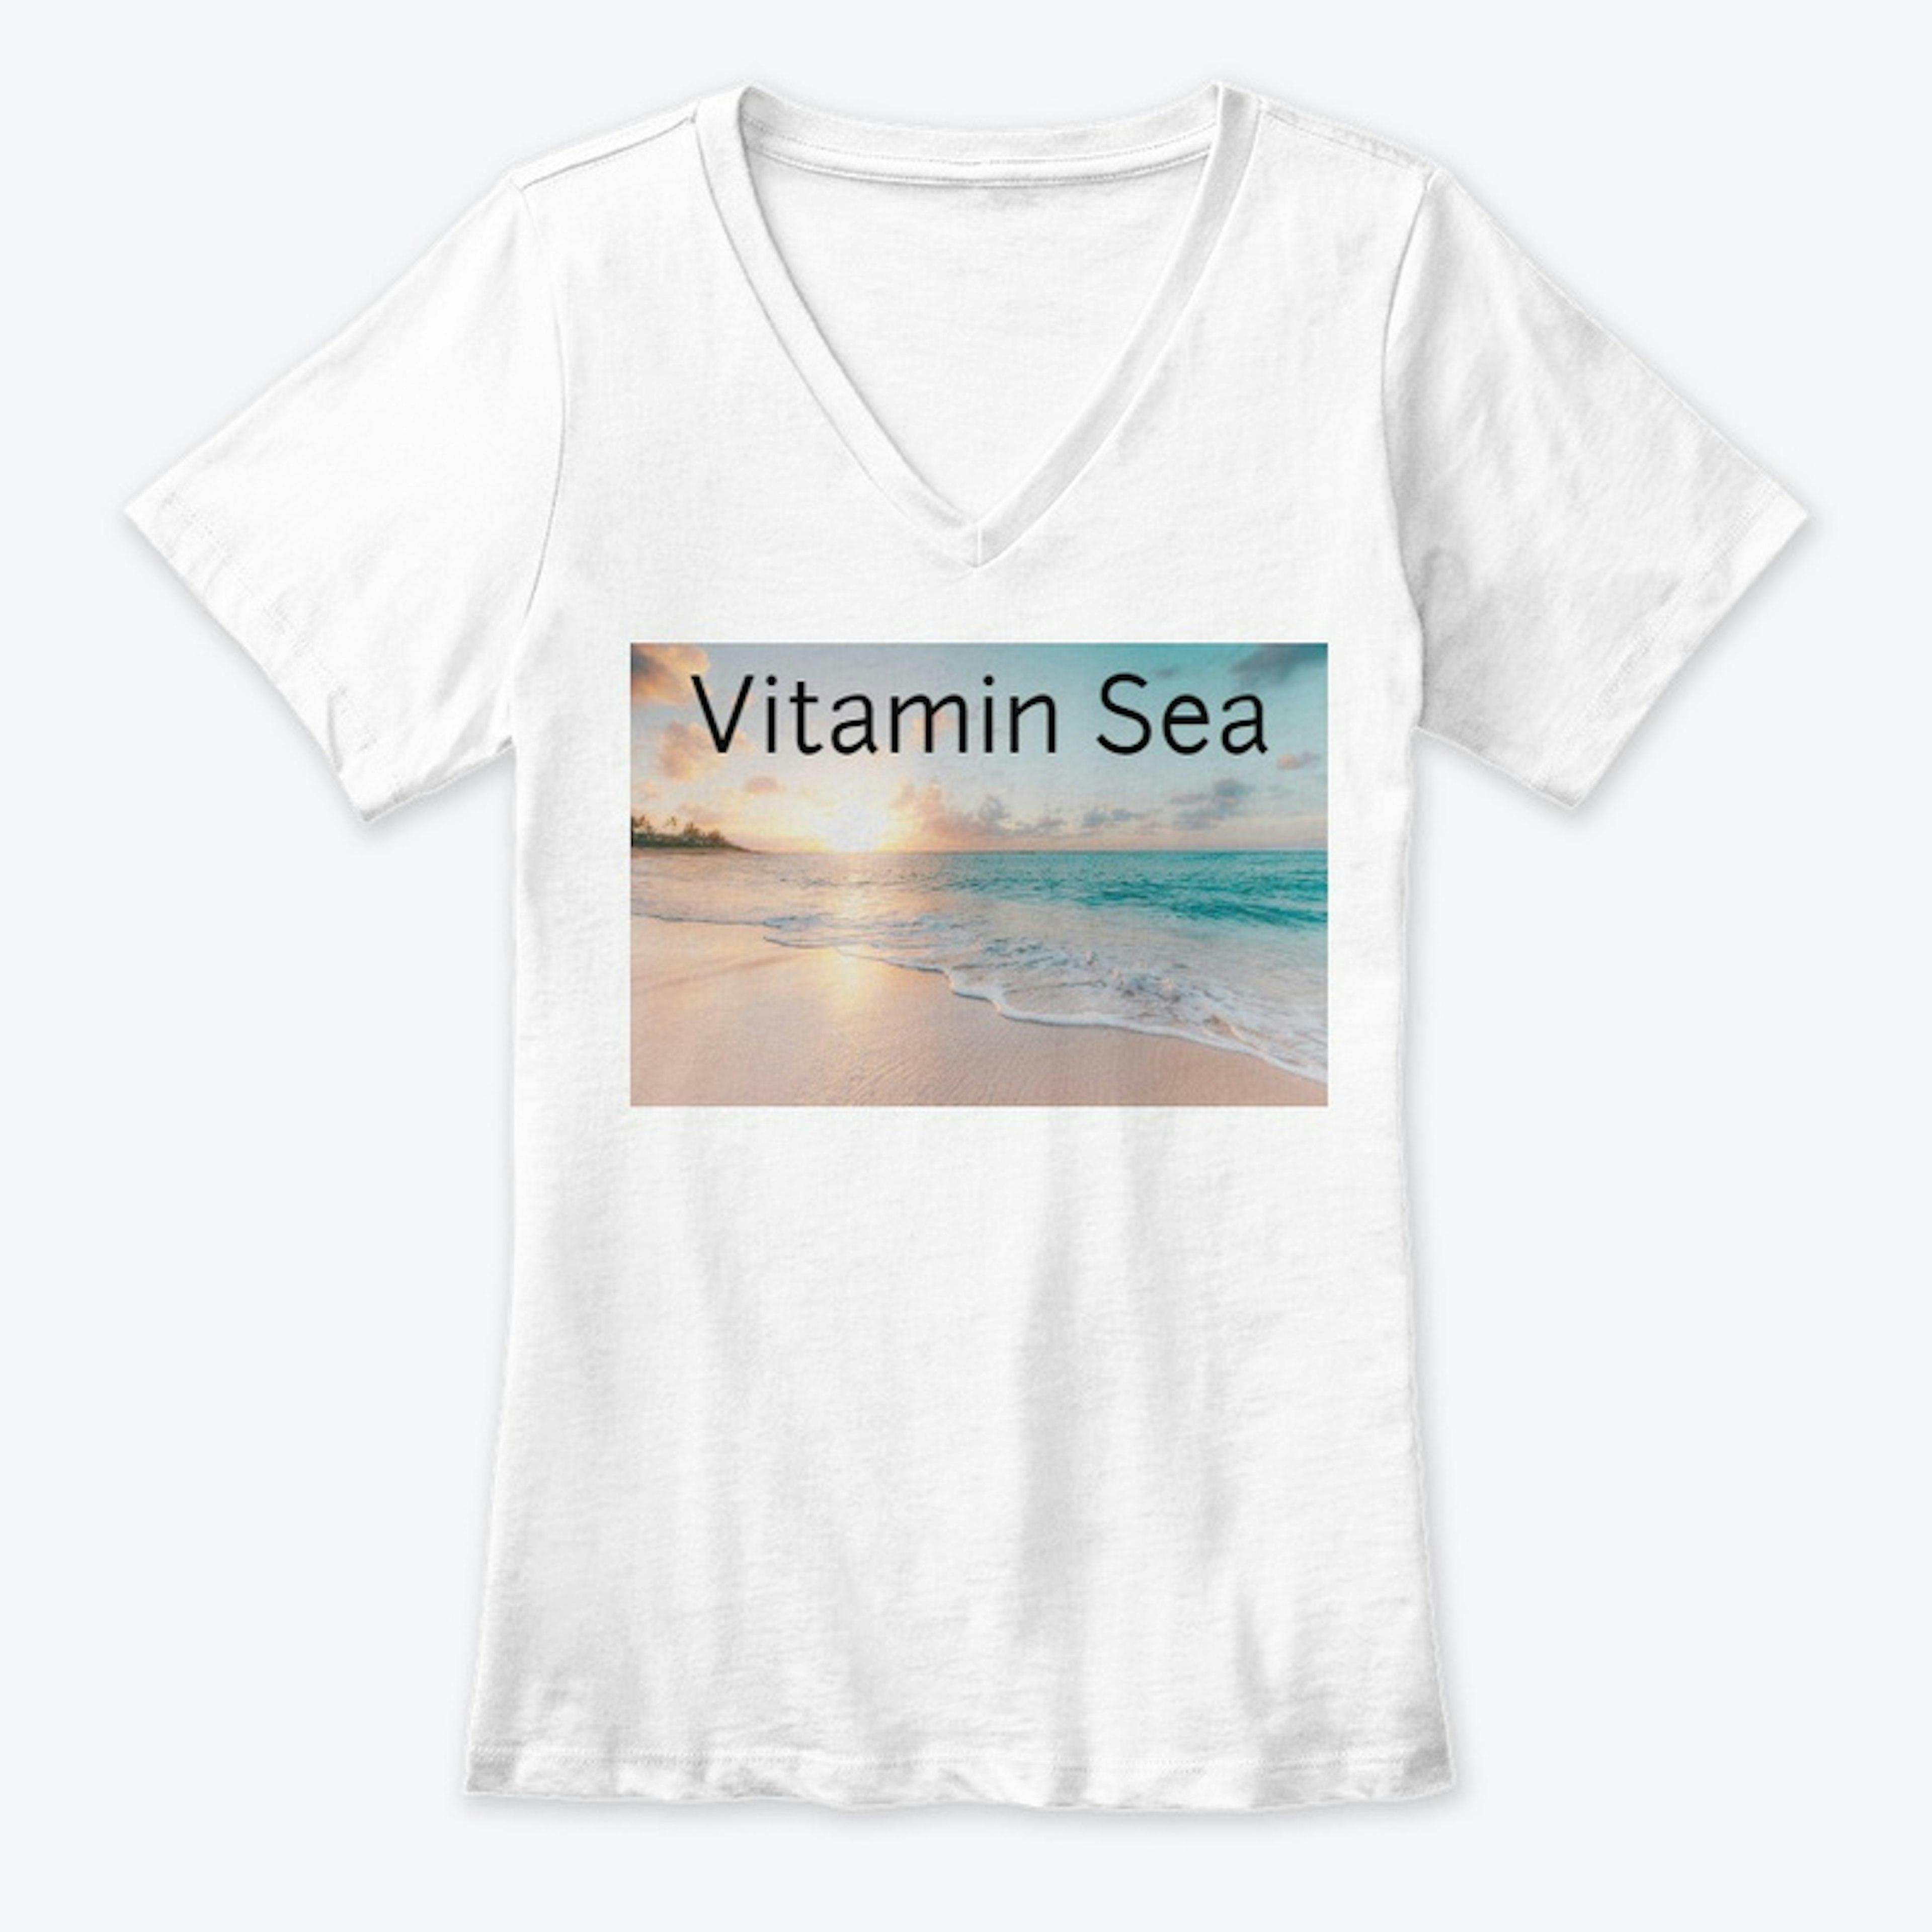 Tee - Vitamin Sea